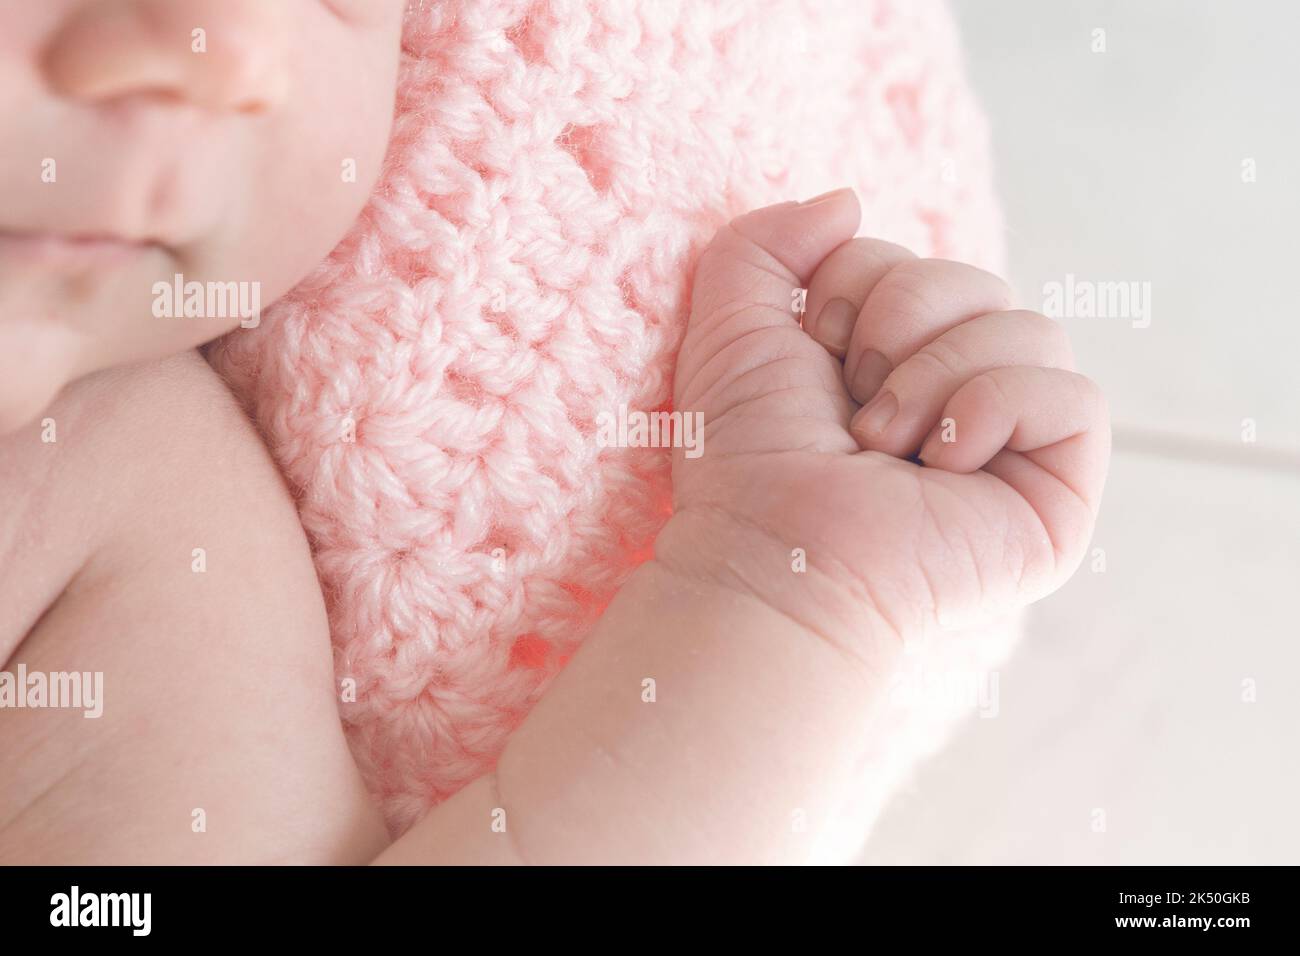 Détail de la main d'une petite fille enveloppée dans une couverture en laine rose Banque D'Images